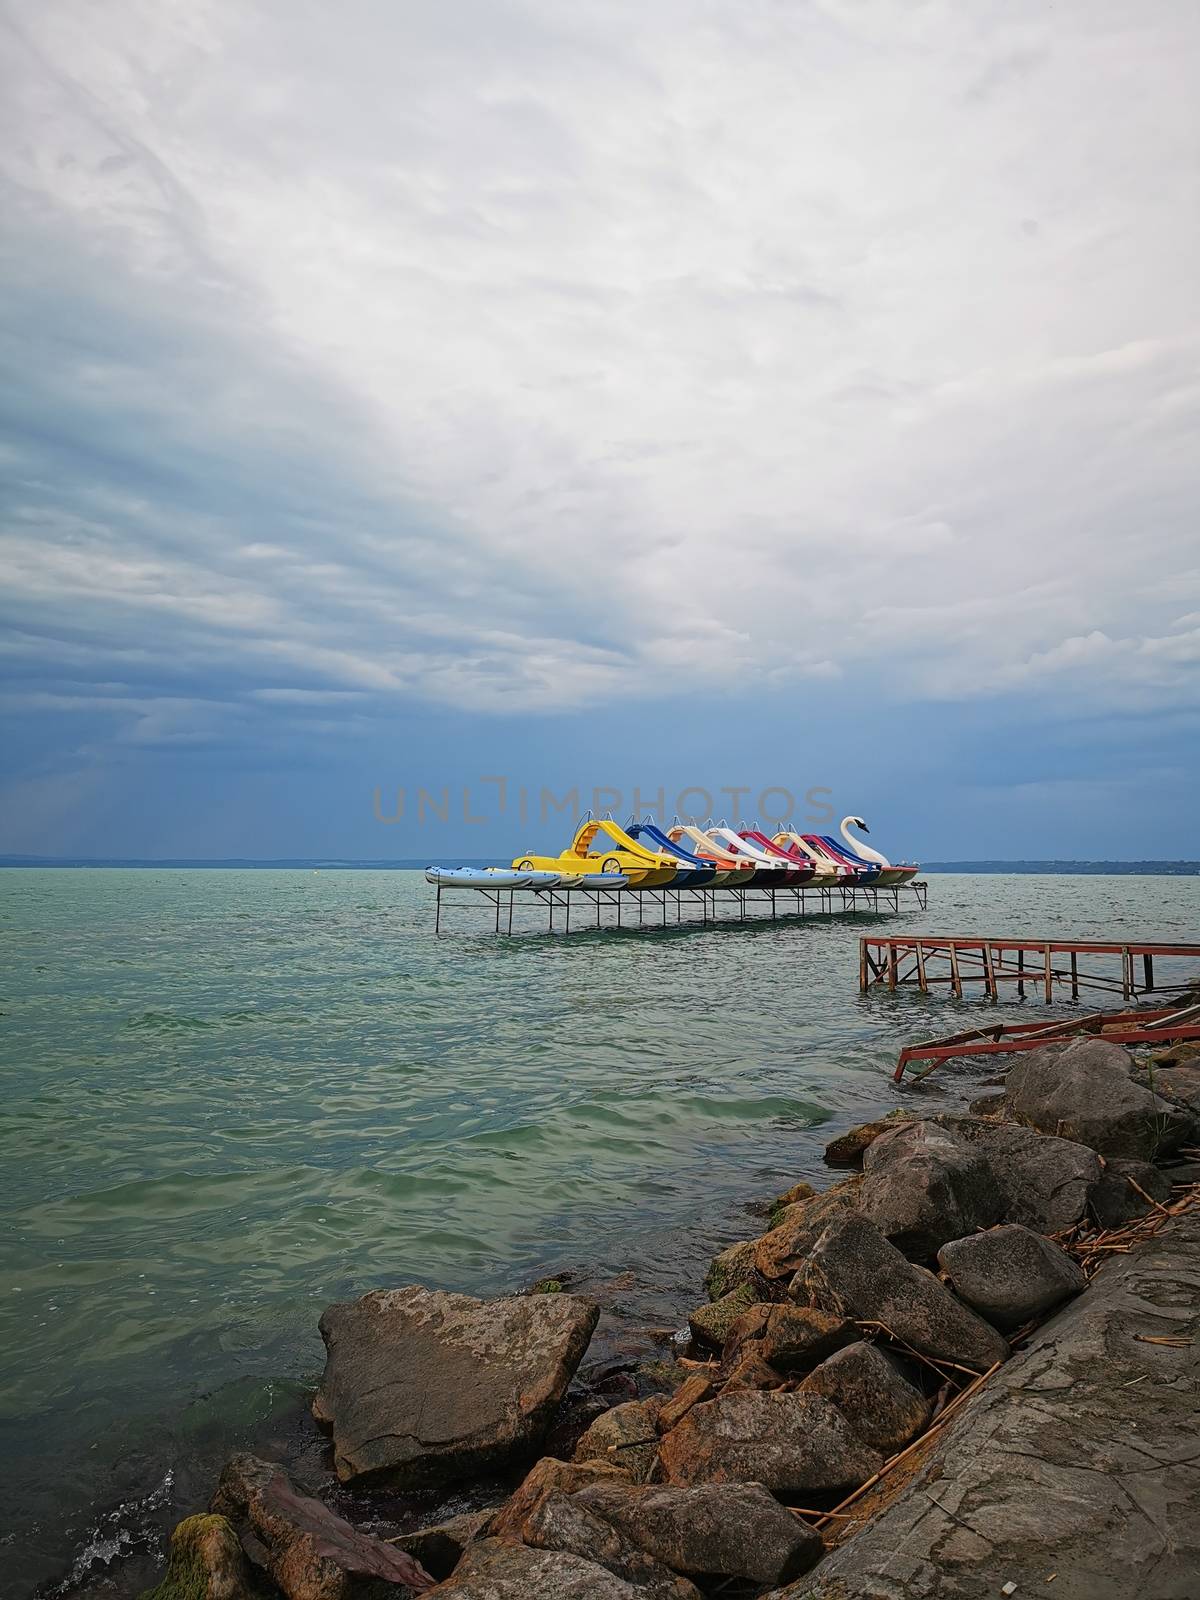 Water slides in Lake Balaton. High quality photo